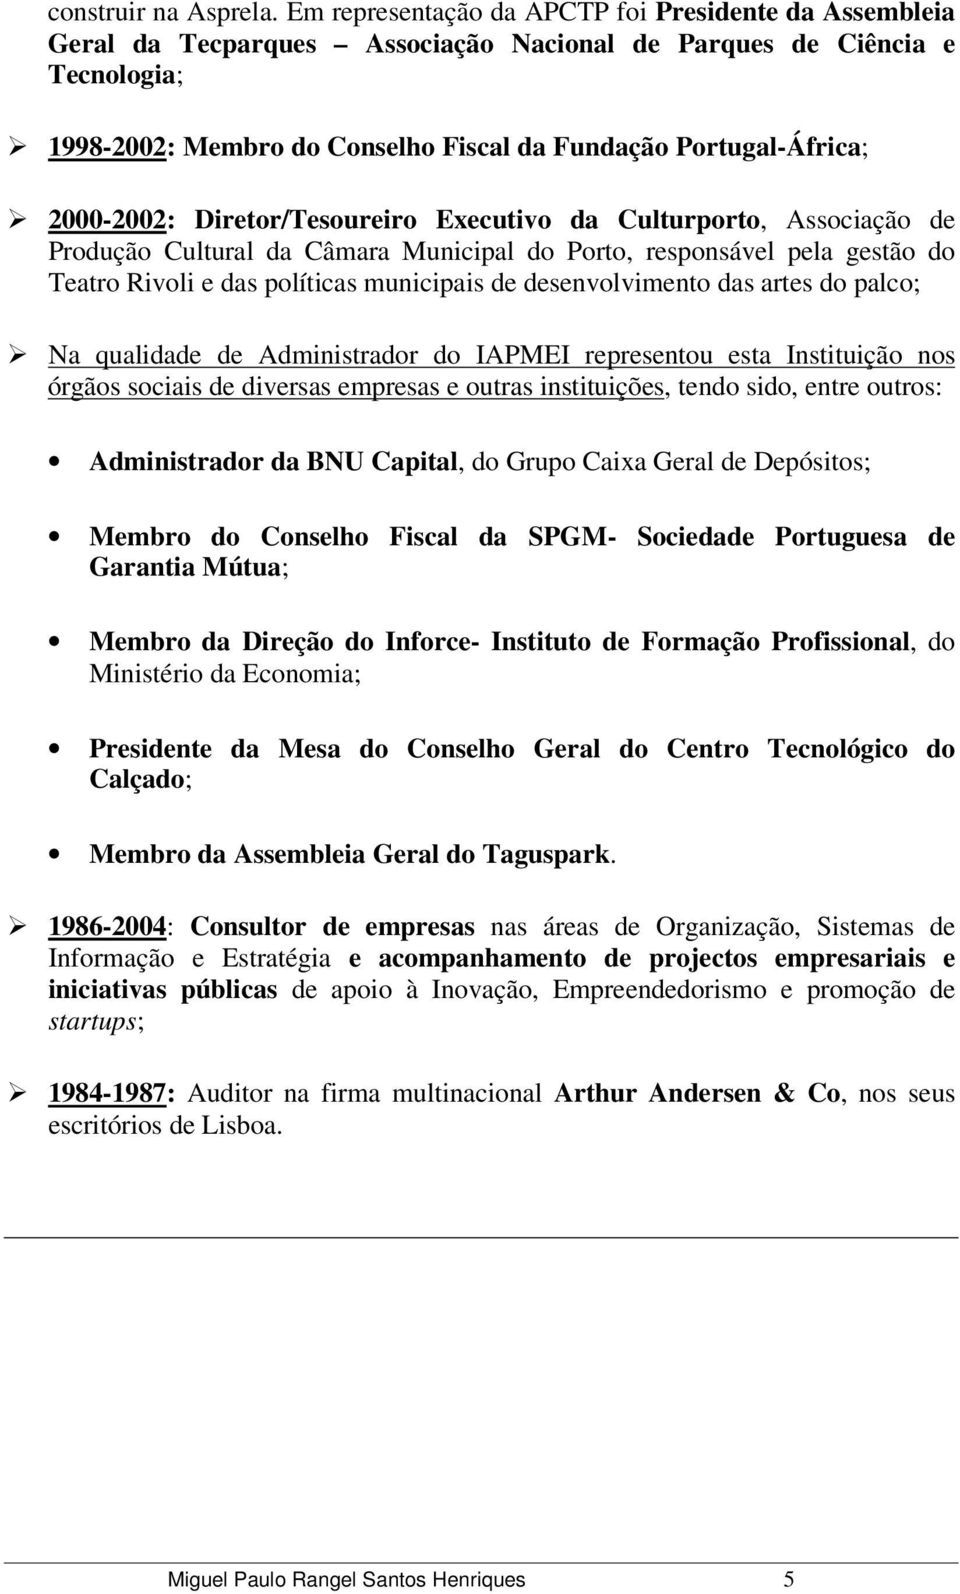 2000-2002: Diretor/Tesoureiro Executivo da Culturporto, Associação de Produção Cultural da Câmara Municipal do Porto, responsável pela gestão do Teatro Rivoli e das políticas municipais de